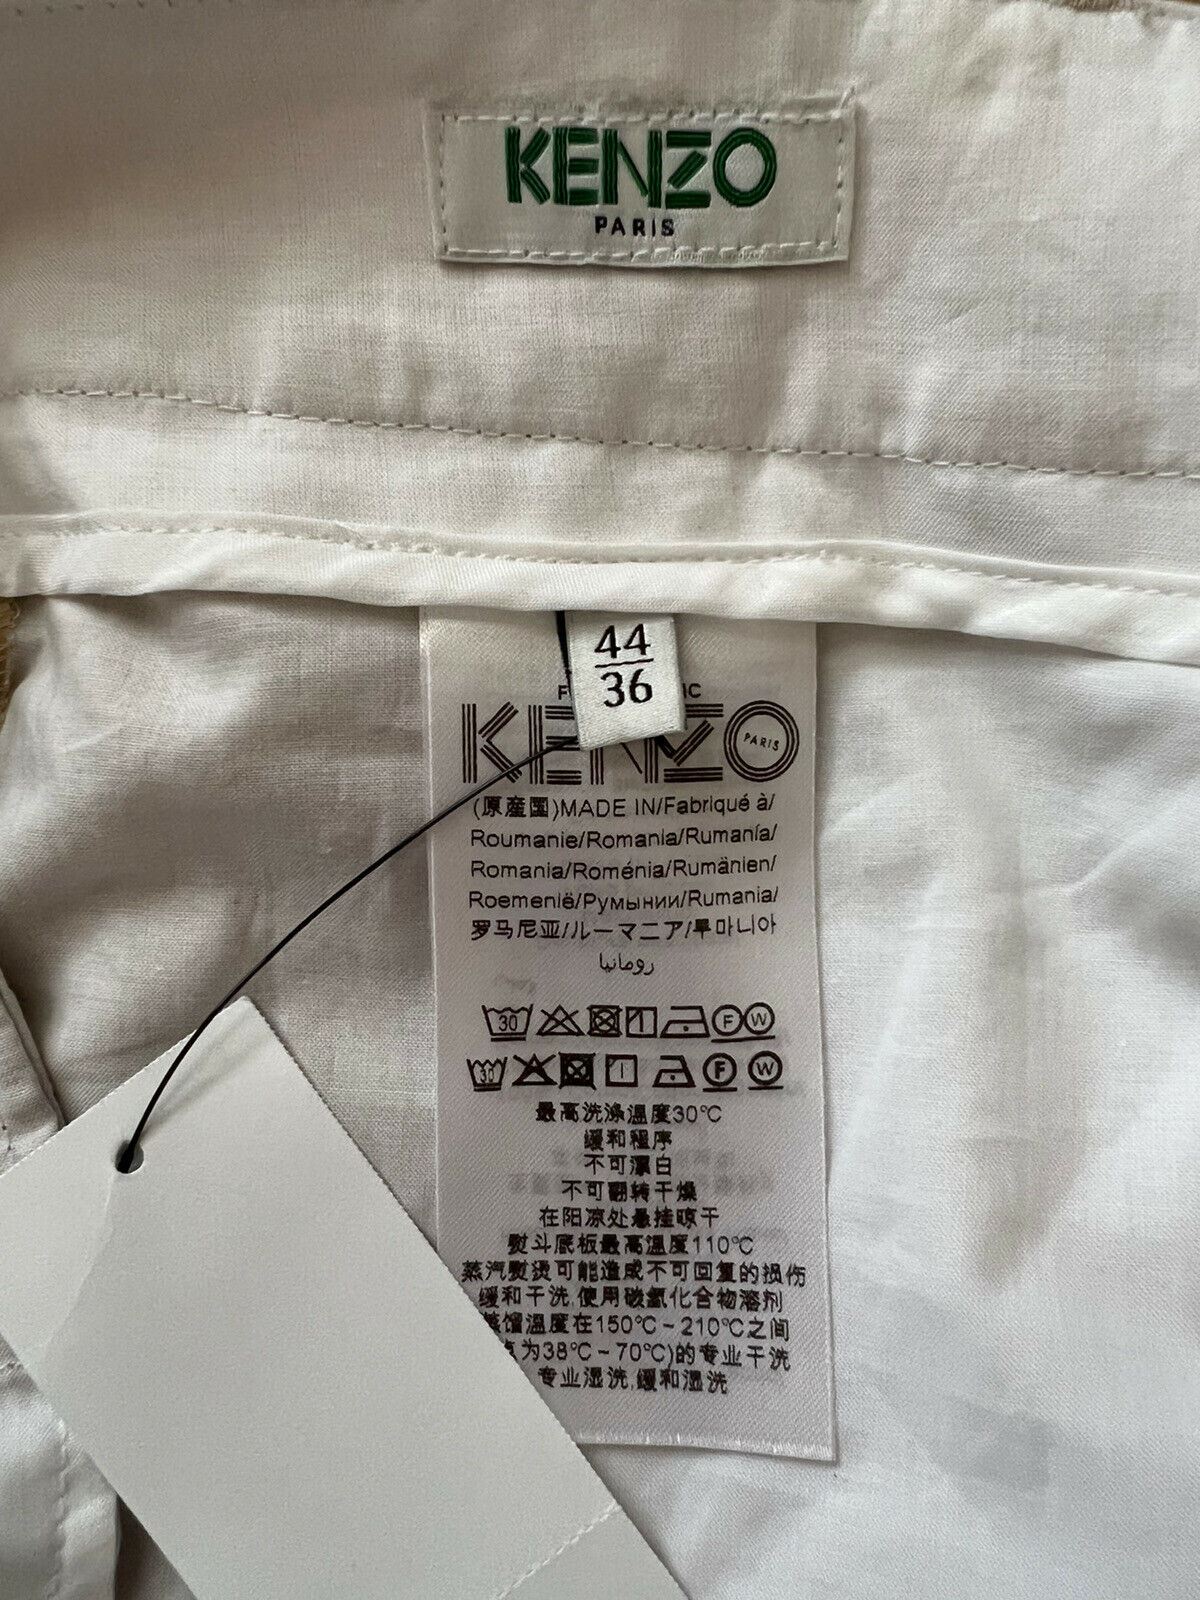 NWT $370 KENZO Men's Pale Camel Cigarette Cotton Pants Size 28 US (44 Euro)